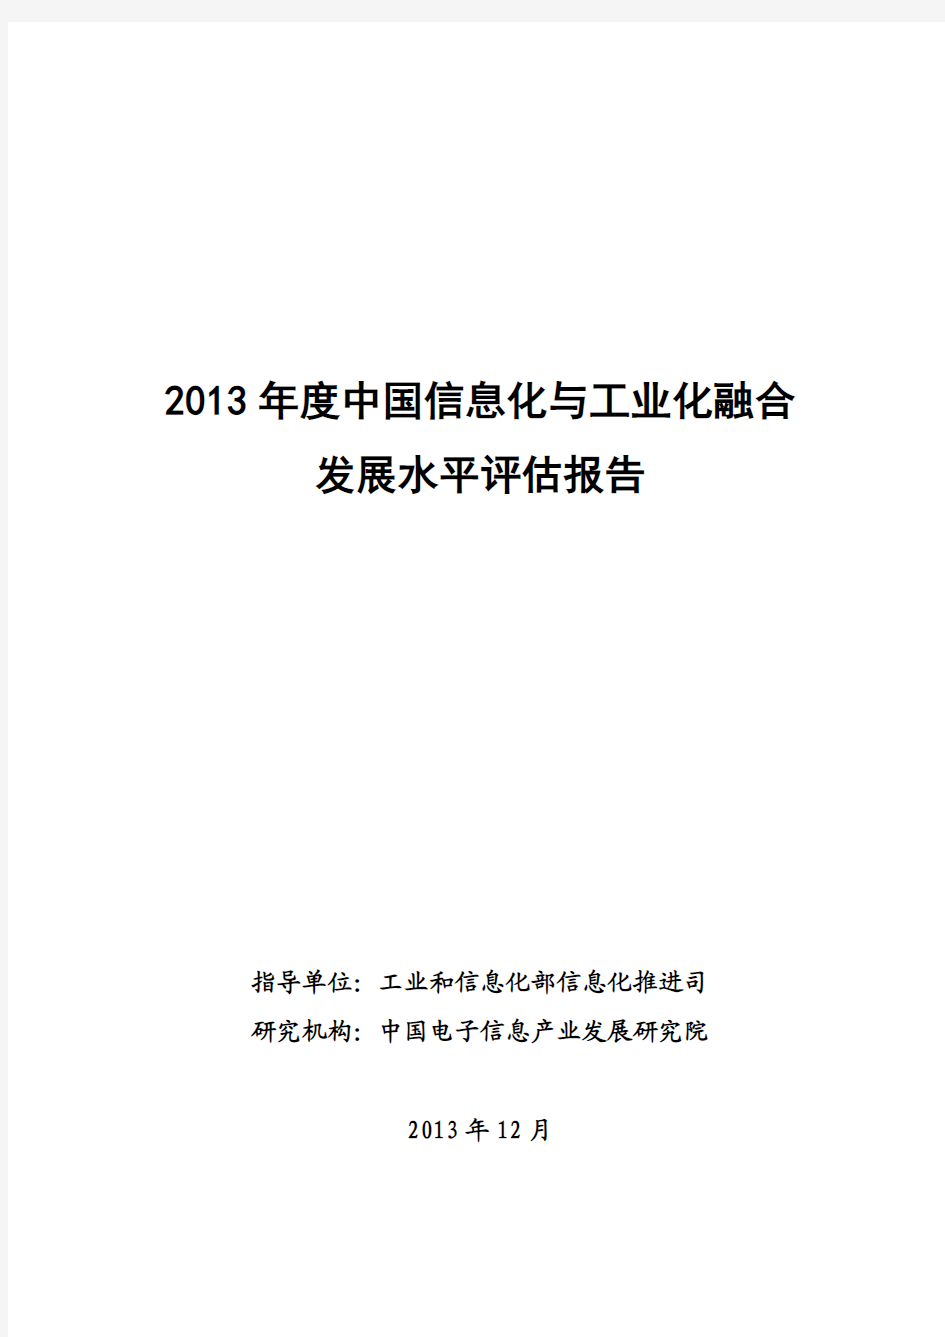 2013中国“两化”融合发展报告